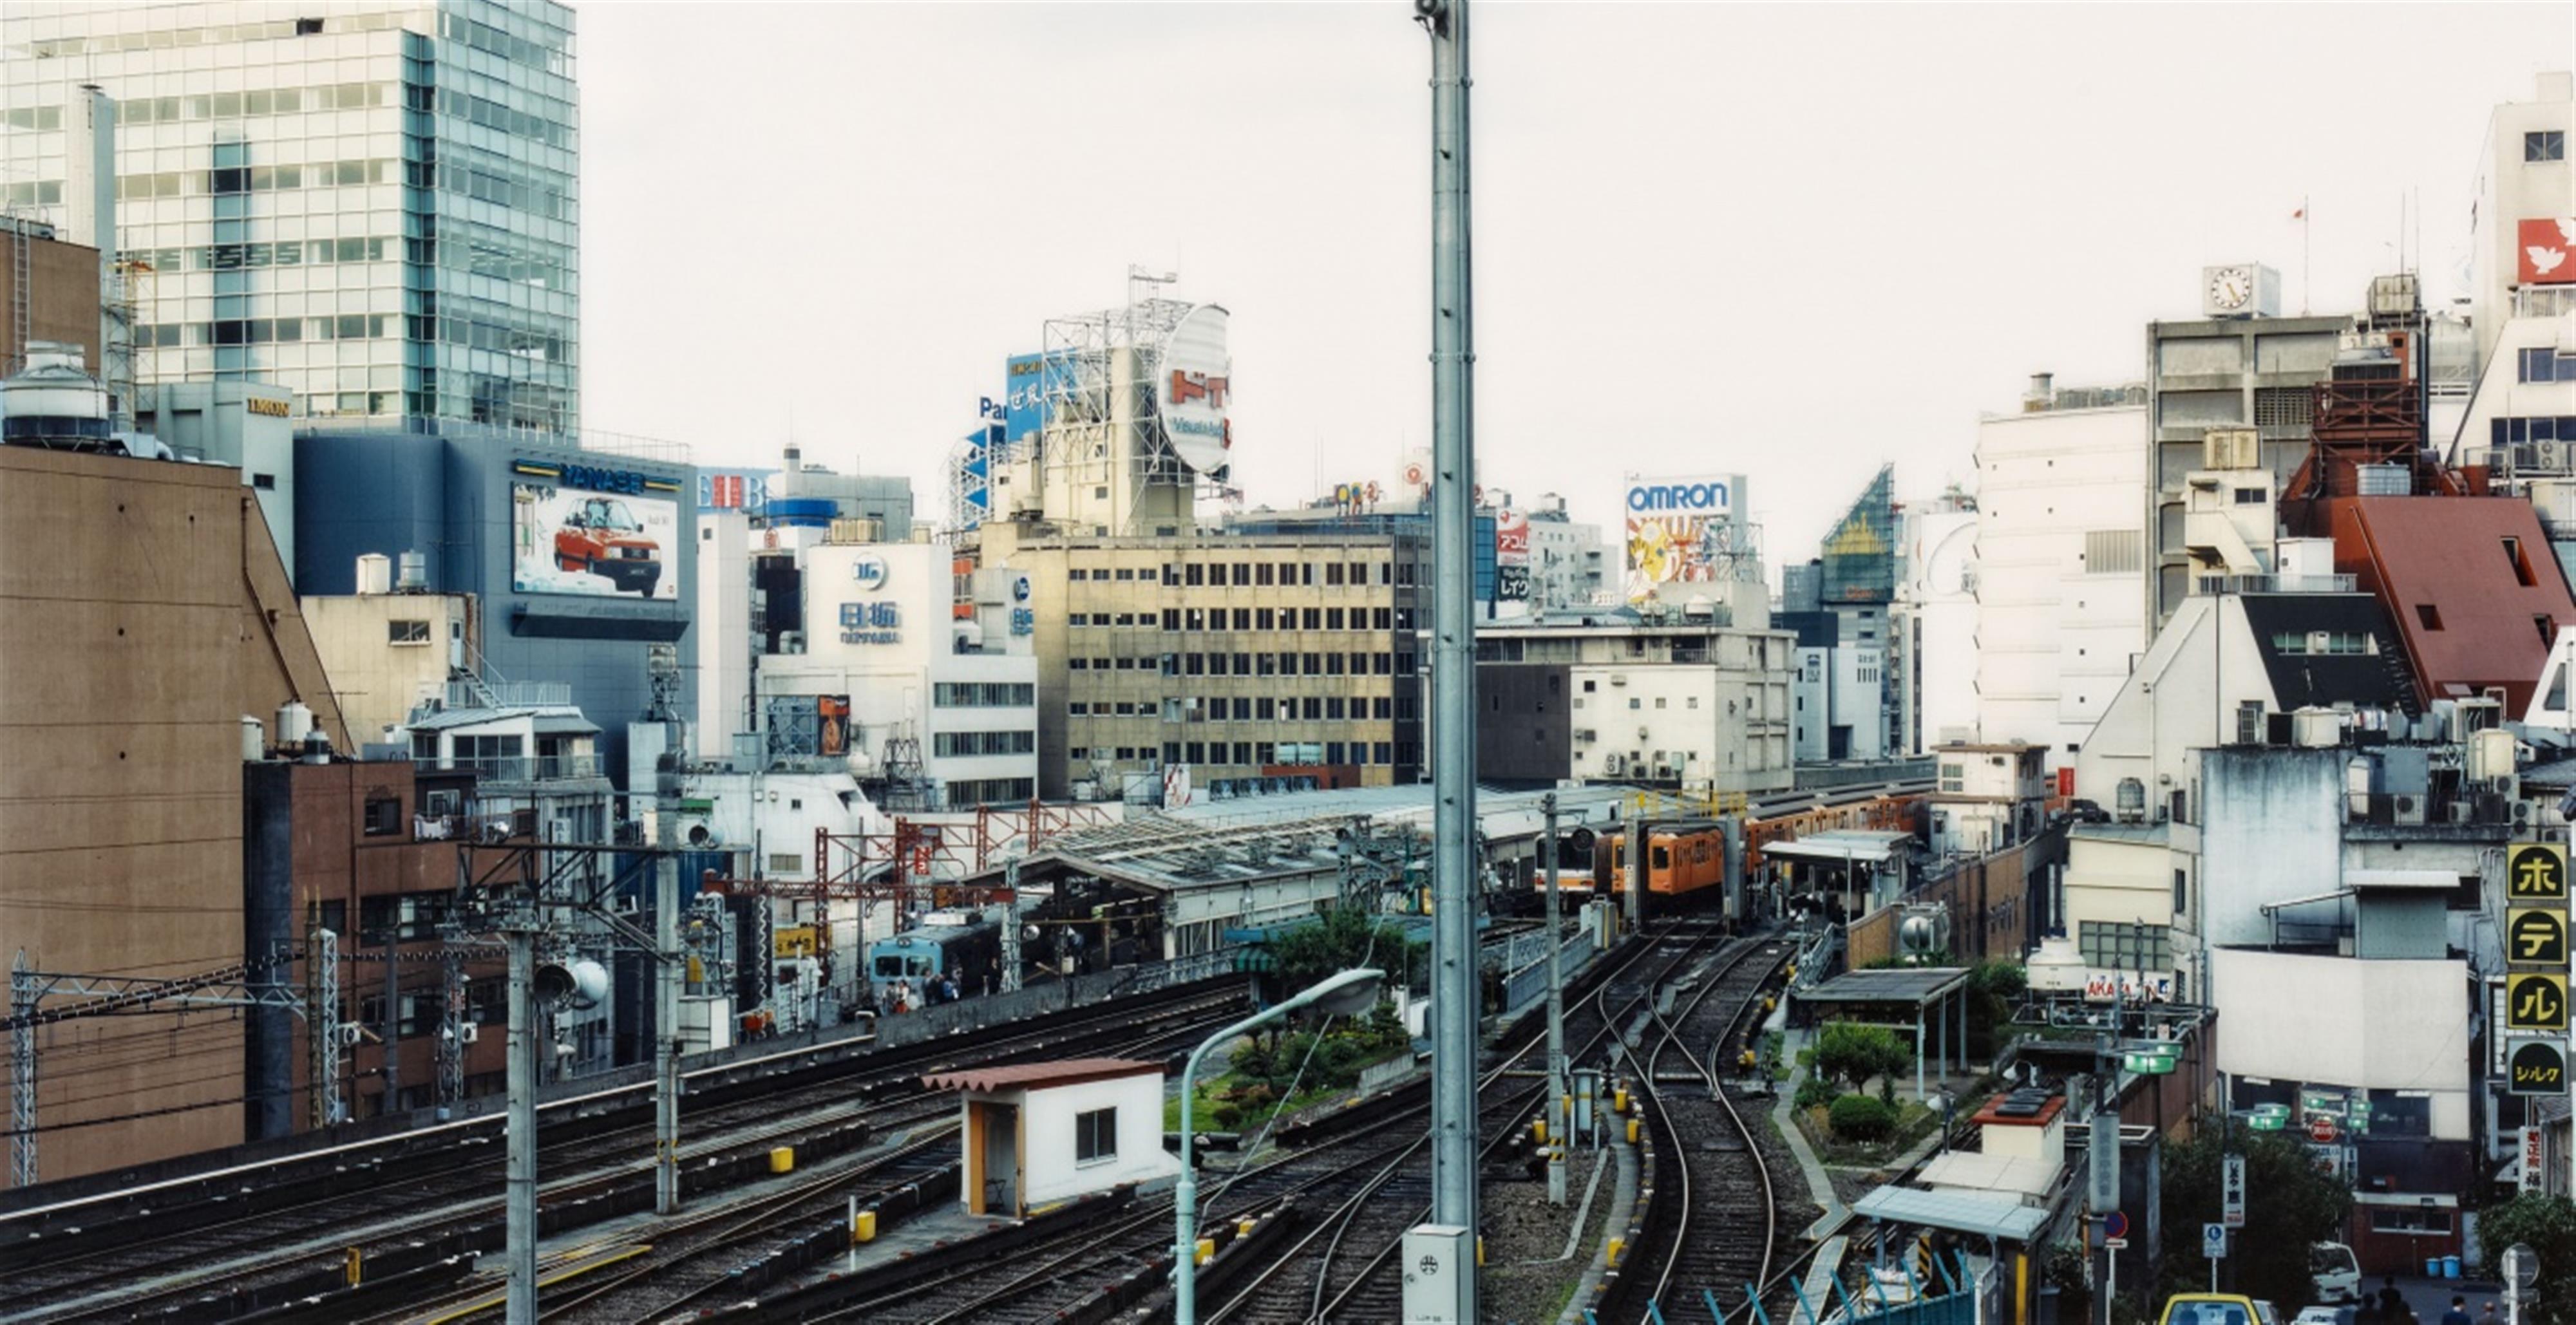 Thomas Struth - City Tracks (Omron), Tokyo (Shibuya-Ku) - image-1